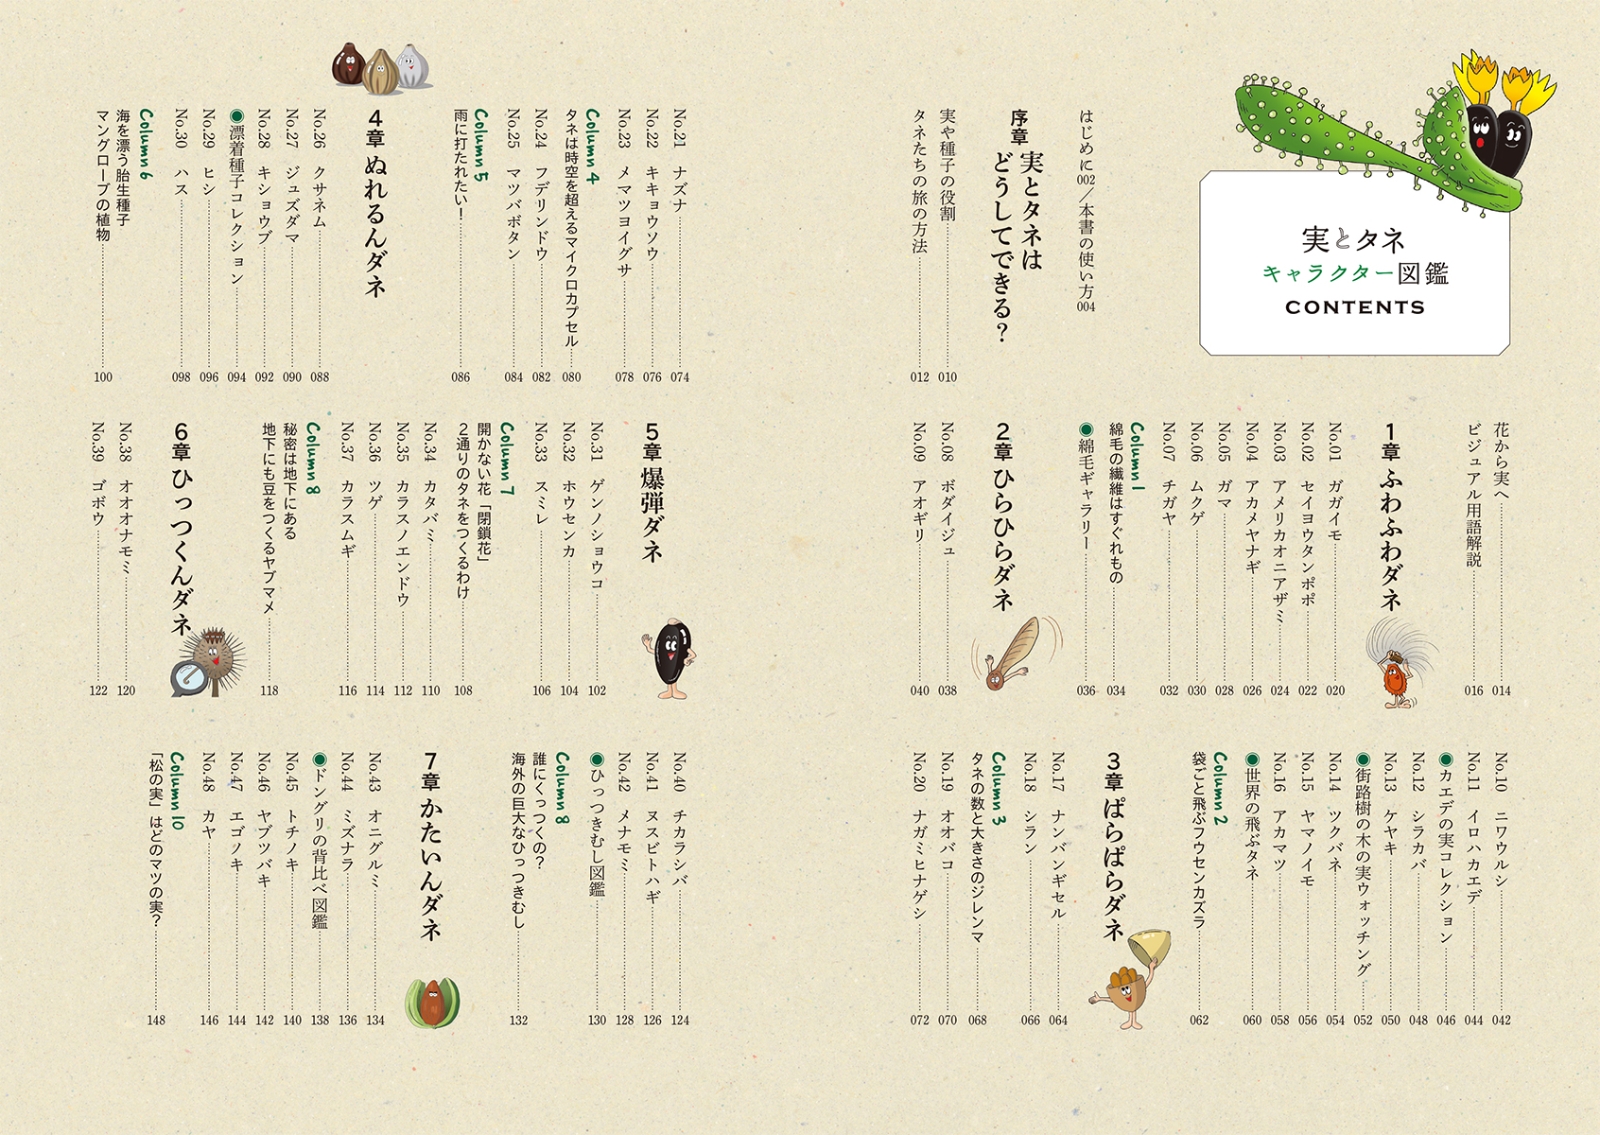 楽天ブックス 実とタネキャラクター図鑑 個性派植物たちの知恵と工夫がよくわかる 多田 多恵子 本